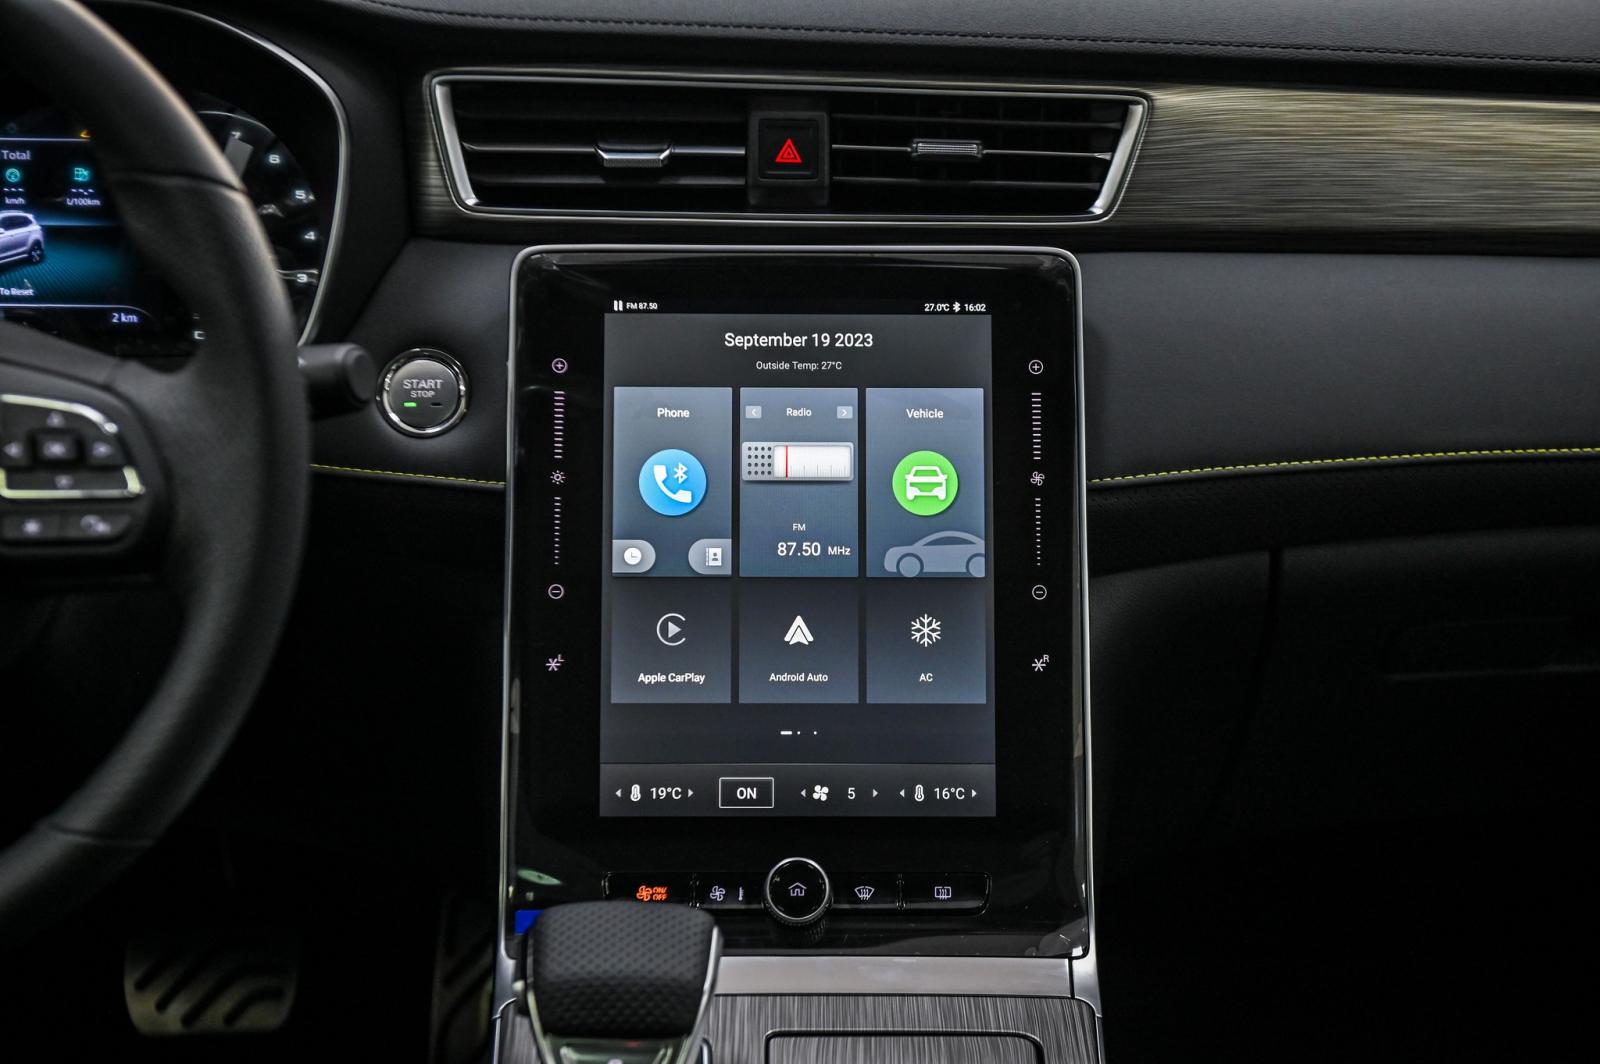 màn hình cảm ứng trung tâm 14,1 inch đặt dọc, tương thích Apple CarPlay/Android Auto.